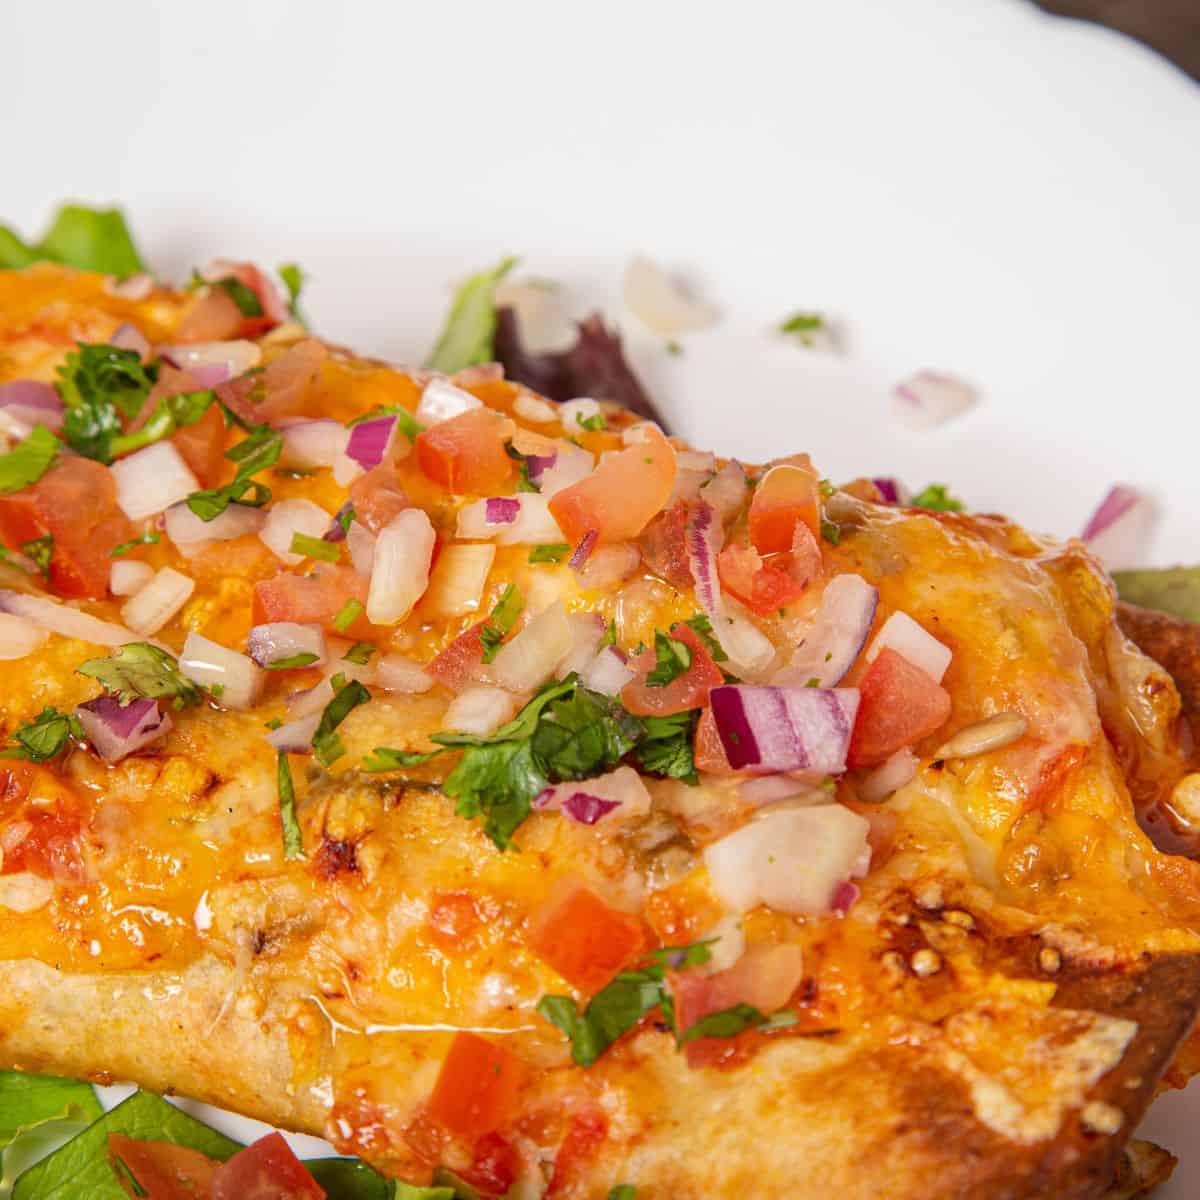 Gluten-free chicken enchilada casserole with sweet potato.